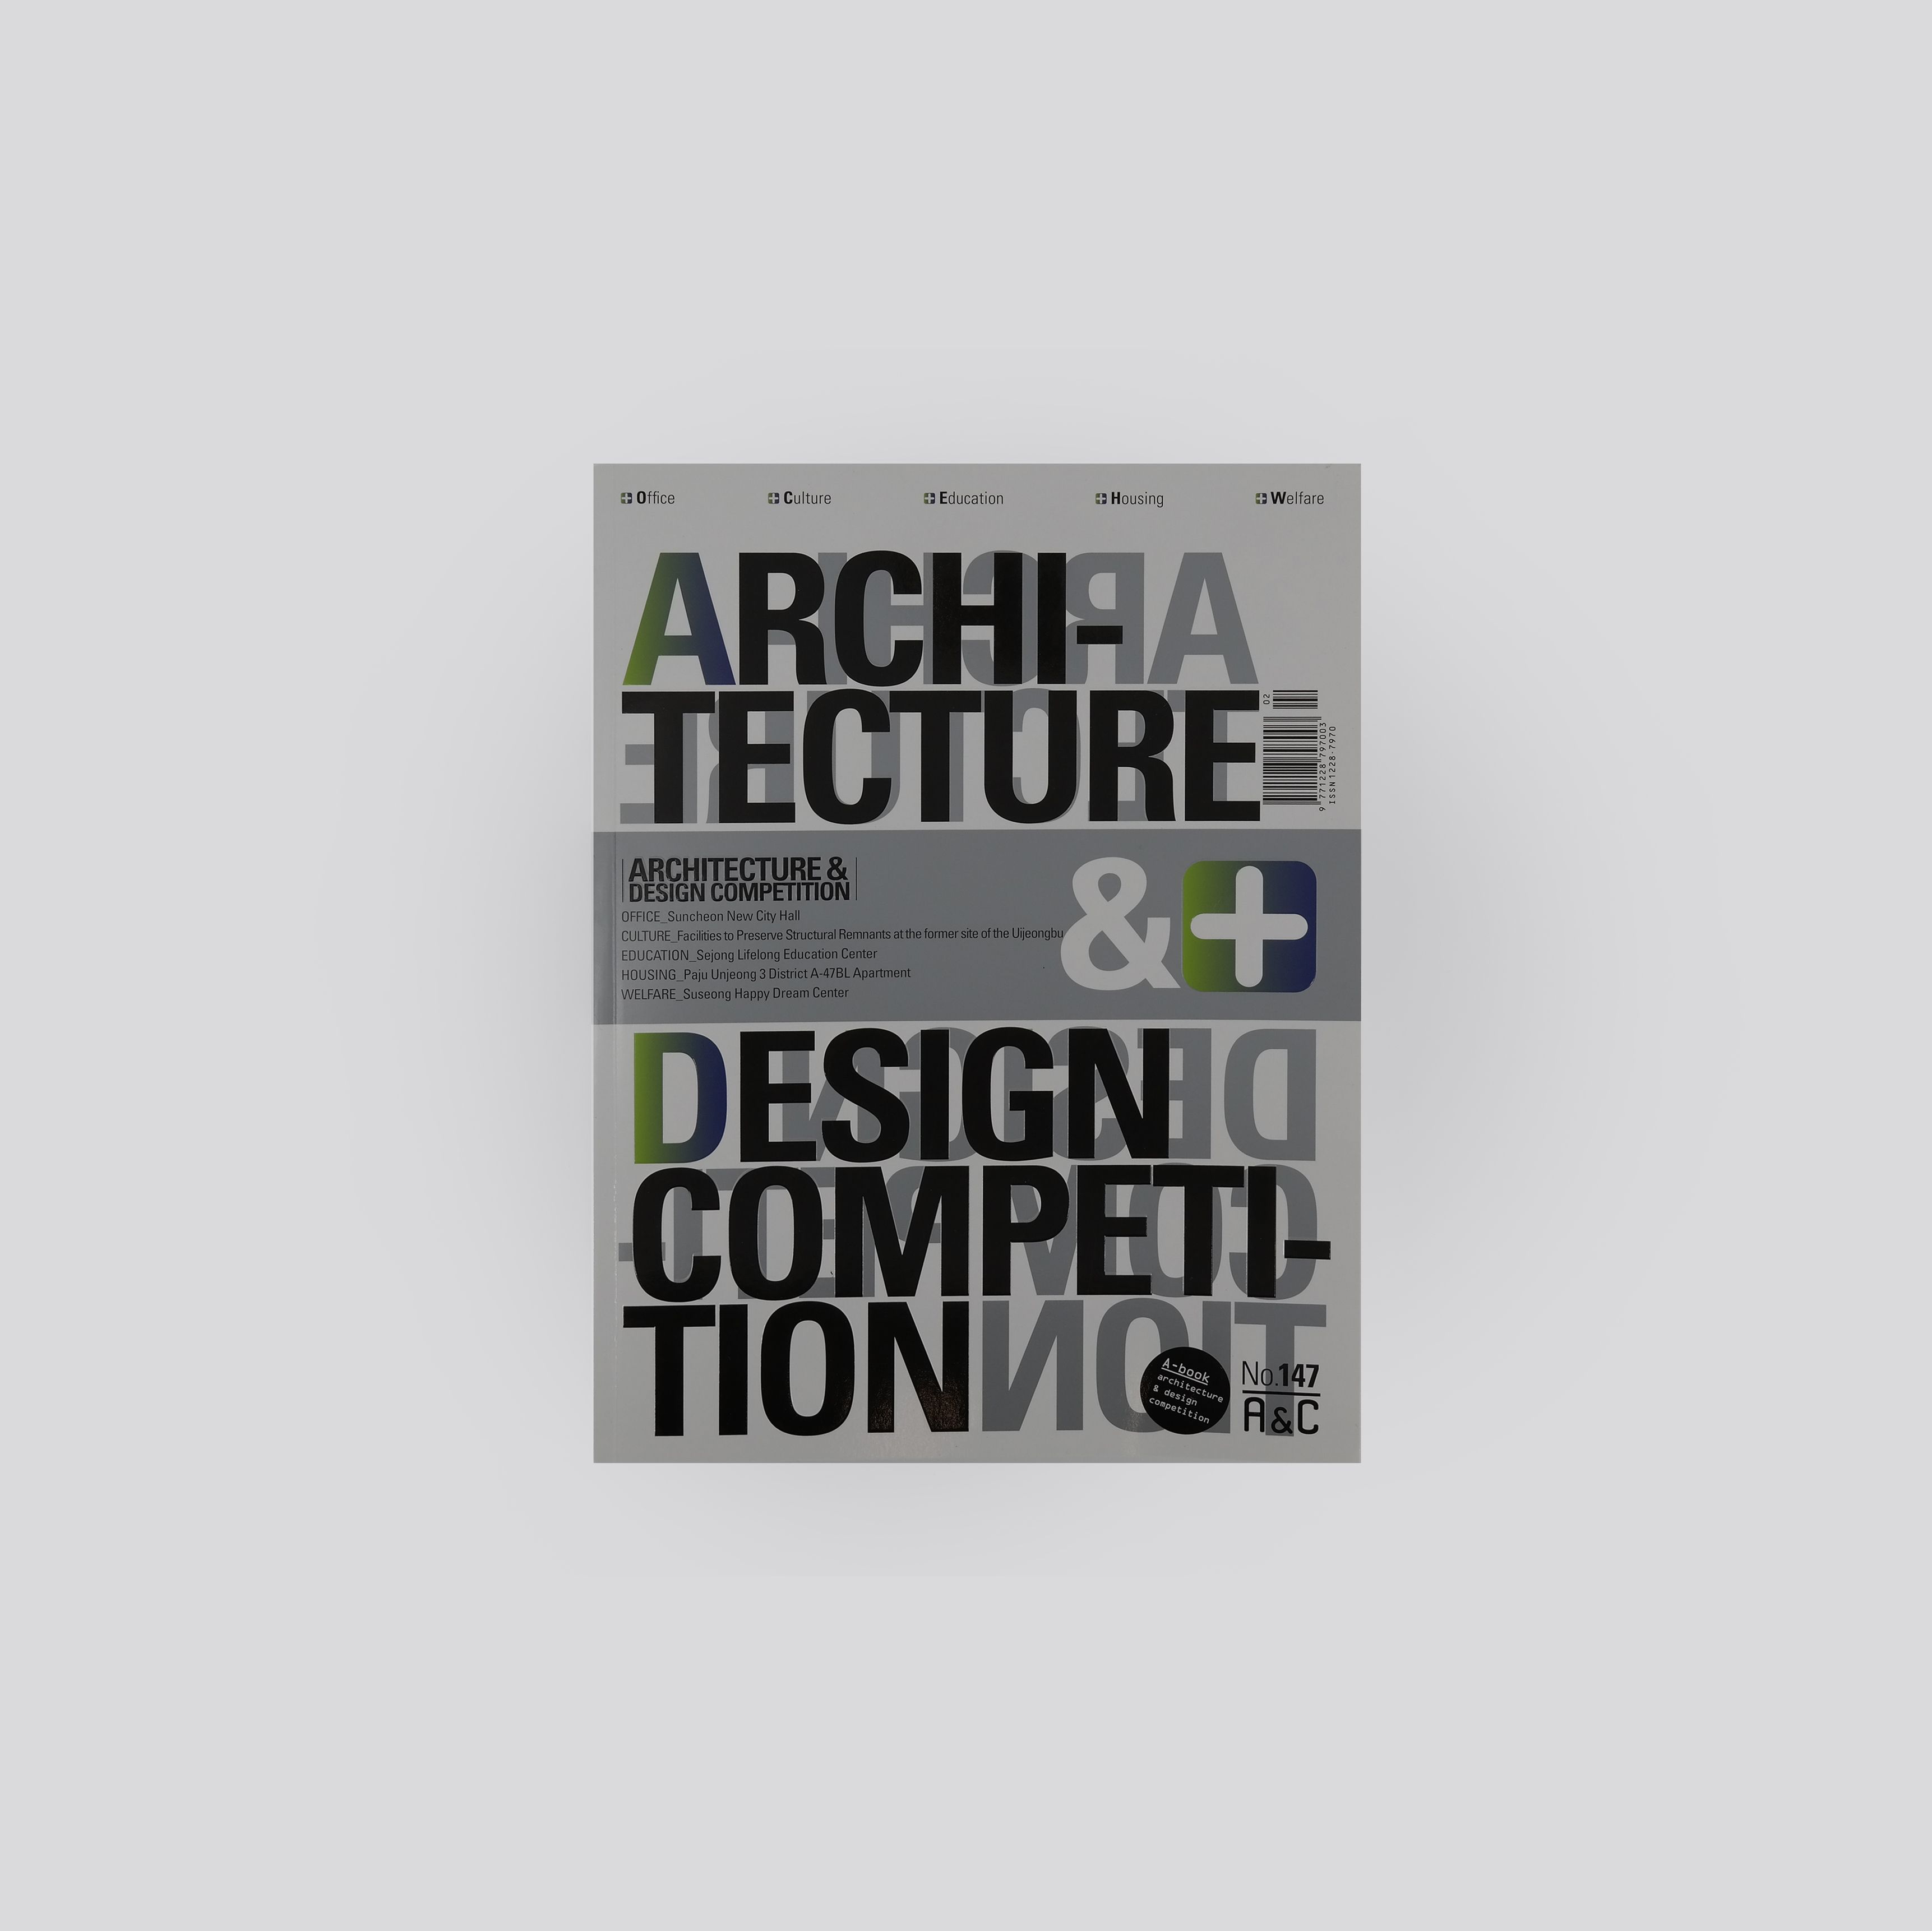 Architecture & Design Competition, No. 147